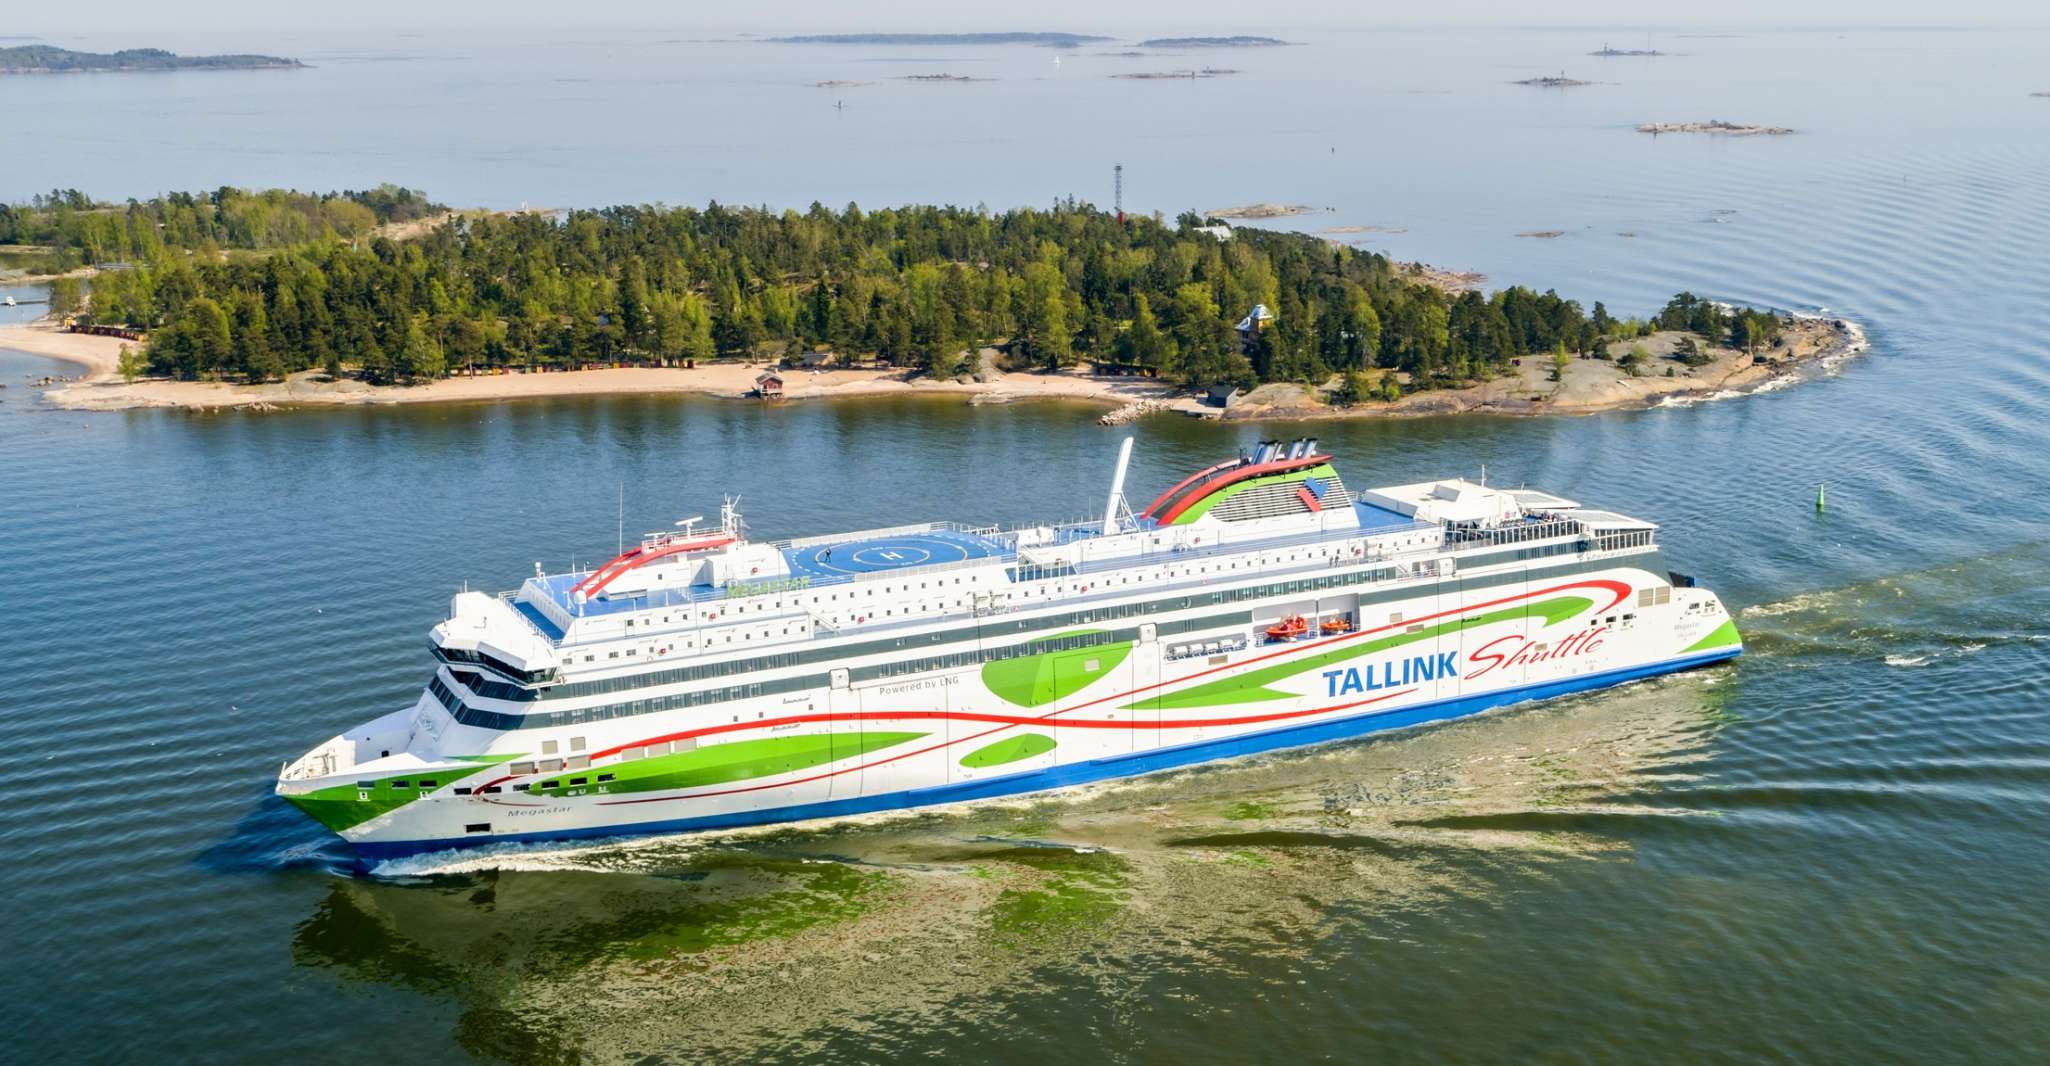 From Helsinki, Return Day Trip Ferry Ticket to Tallinn - Housity